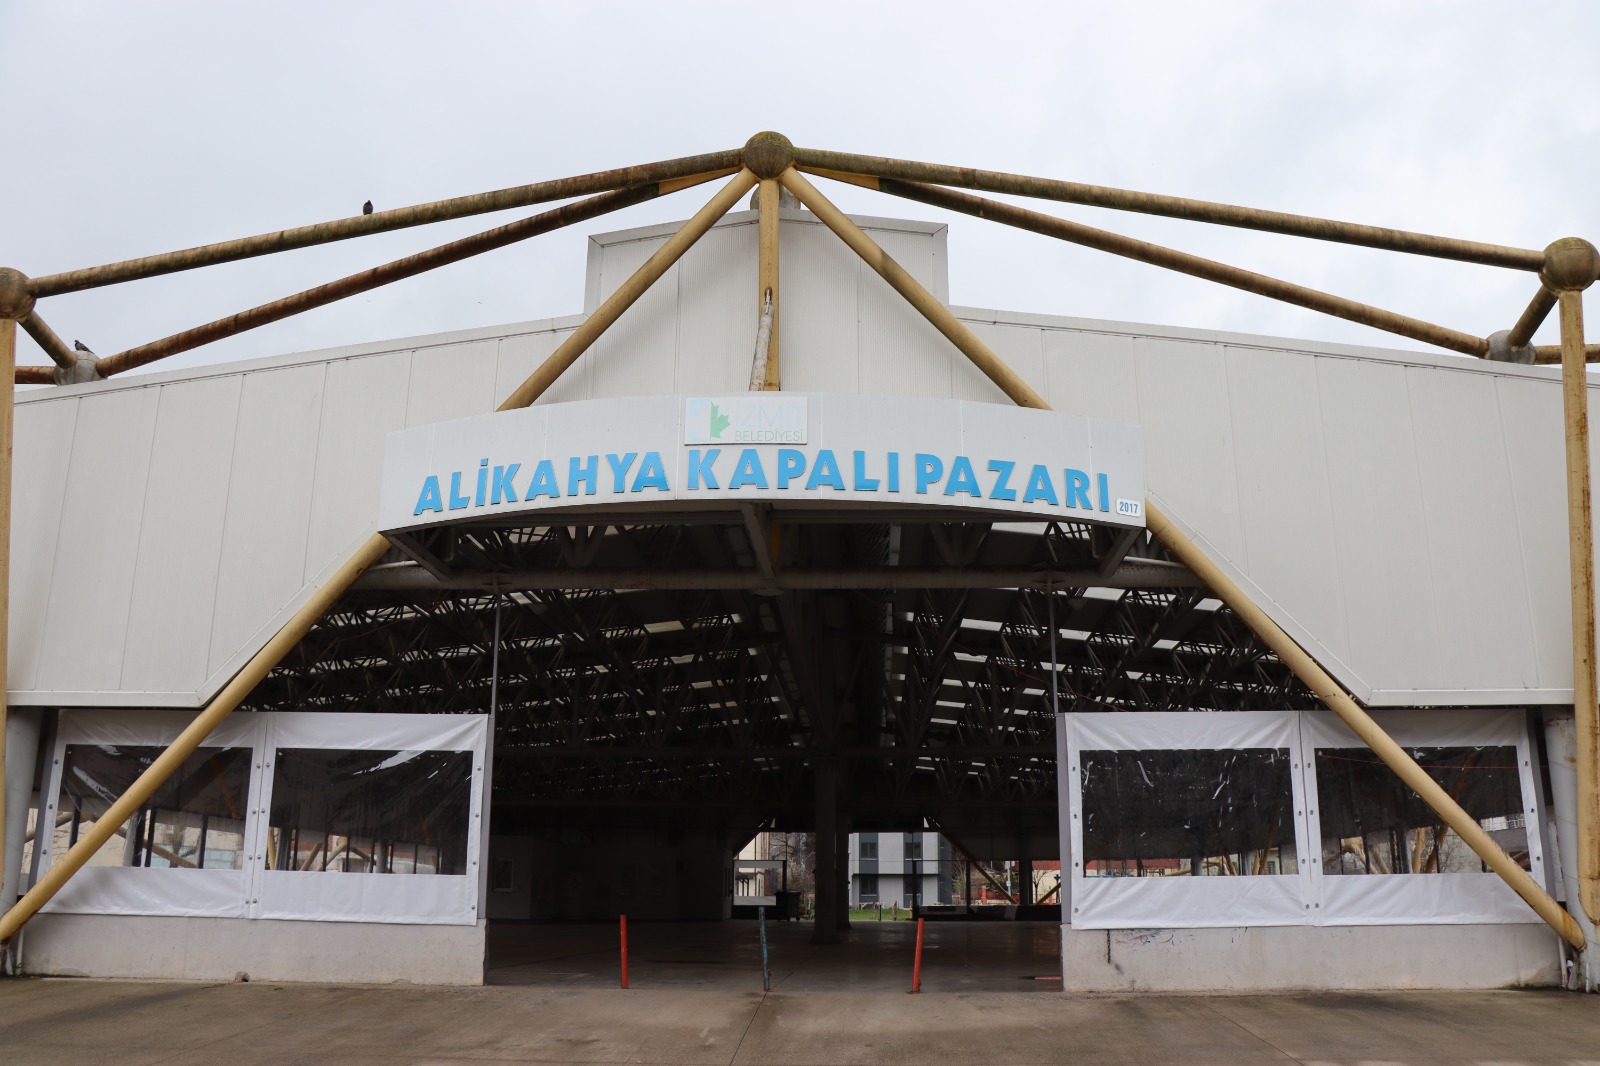 İzmit Belediyesi’nden Alikahya Kapalı pazarına şeffaf koruma